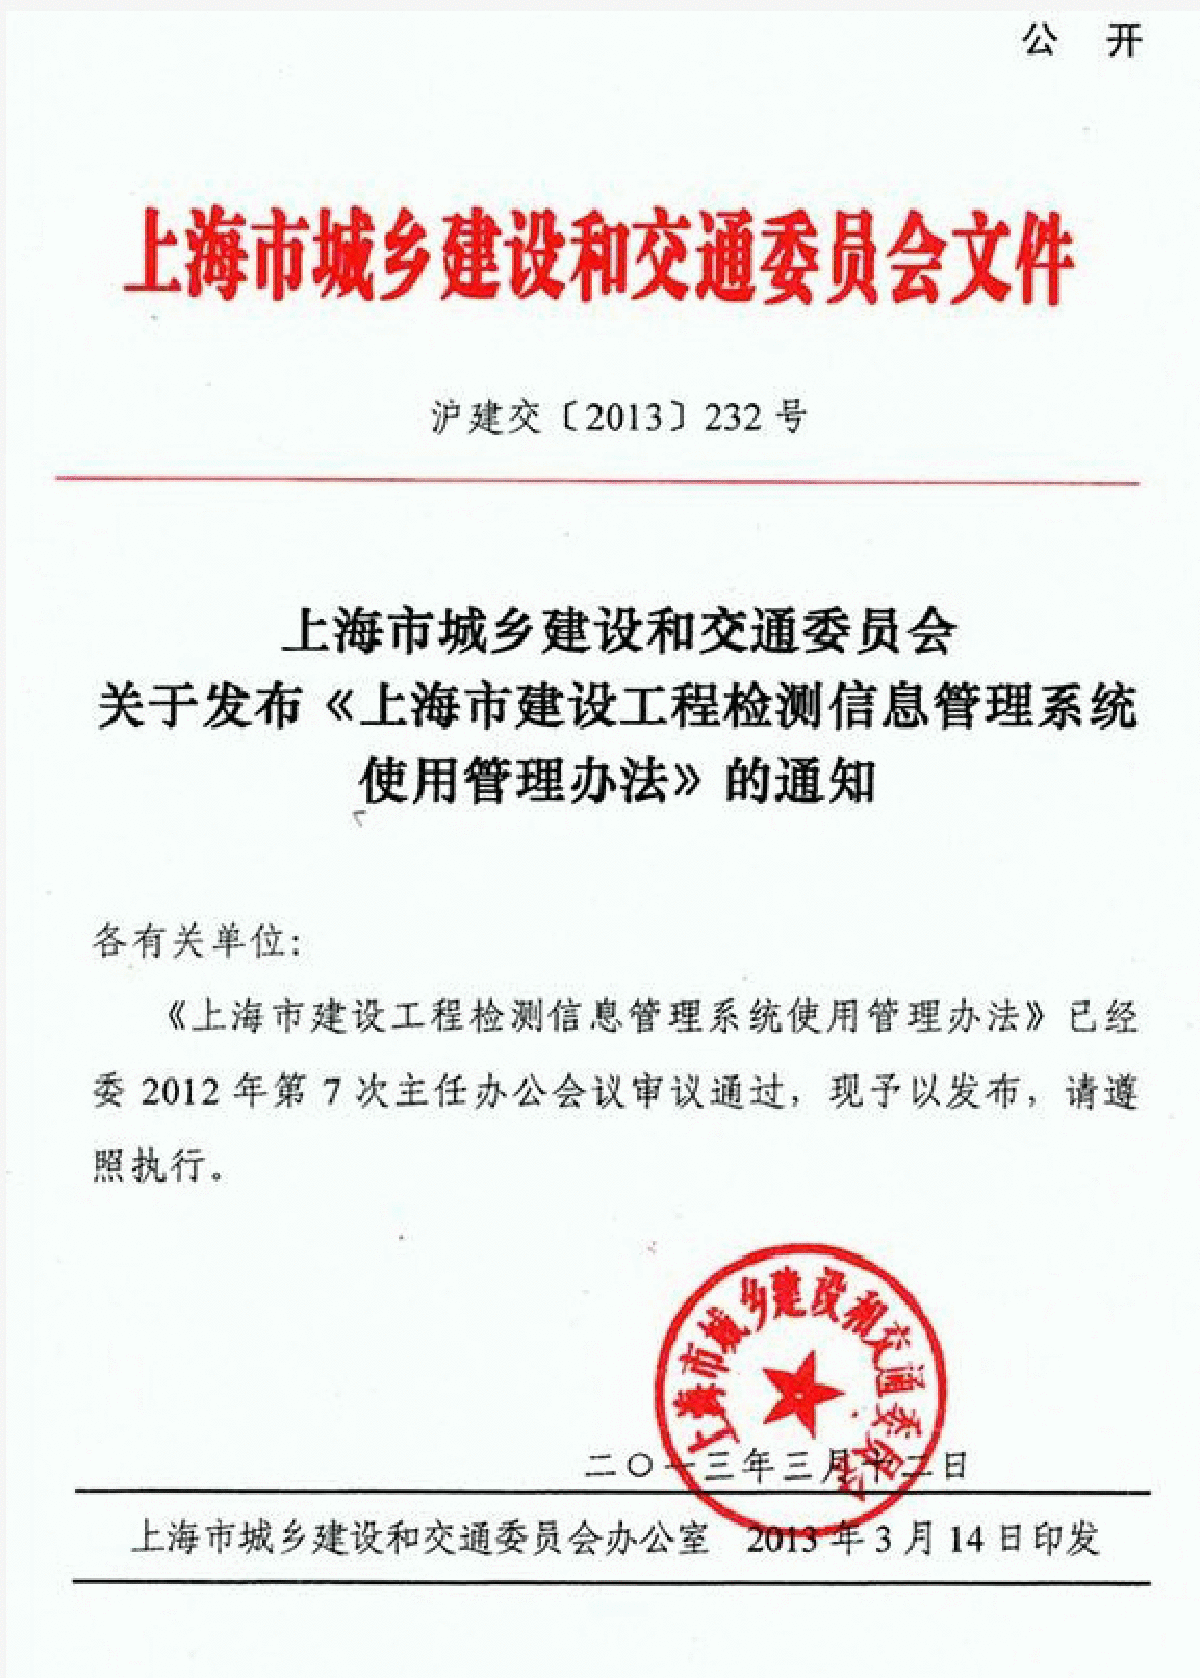 沪建交〔2013〕232号《上海市建设工程检测信息管理系统使用管理办法